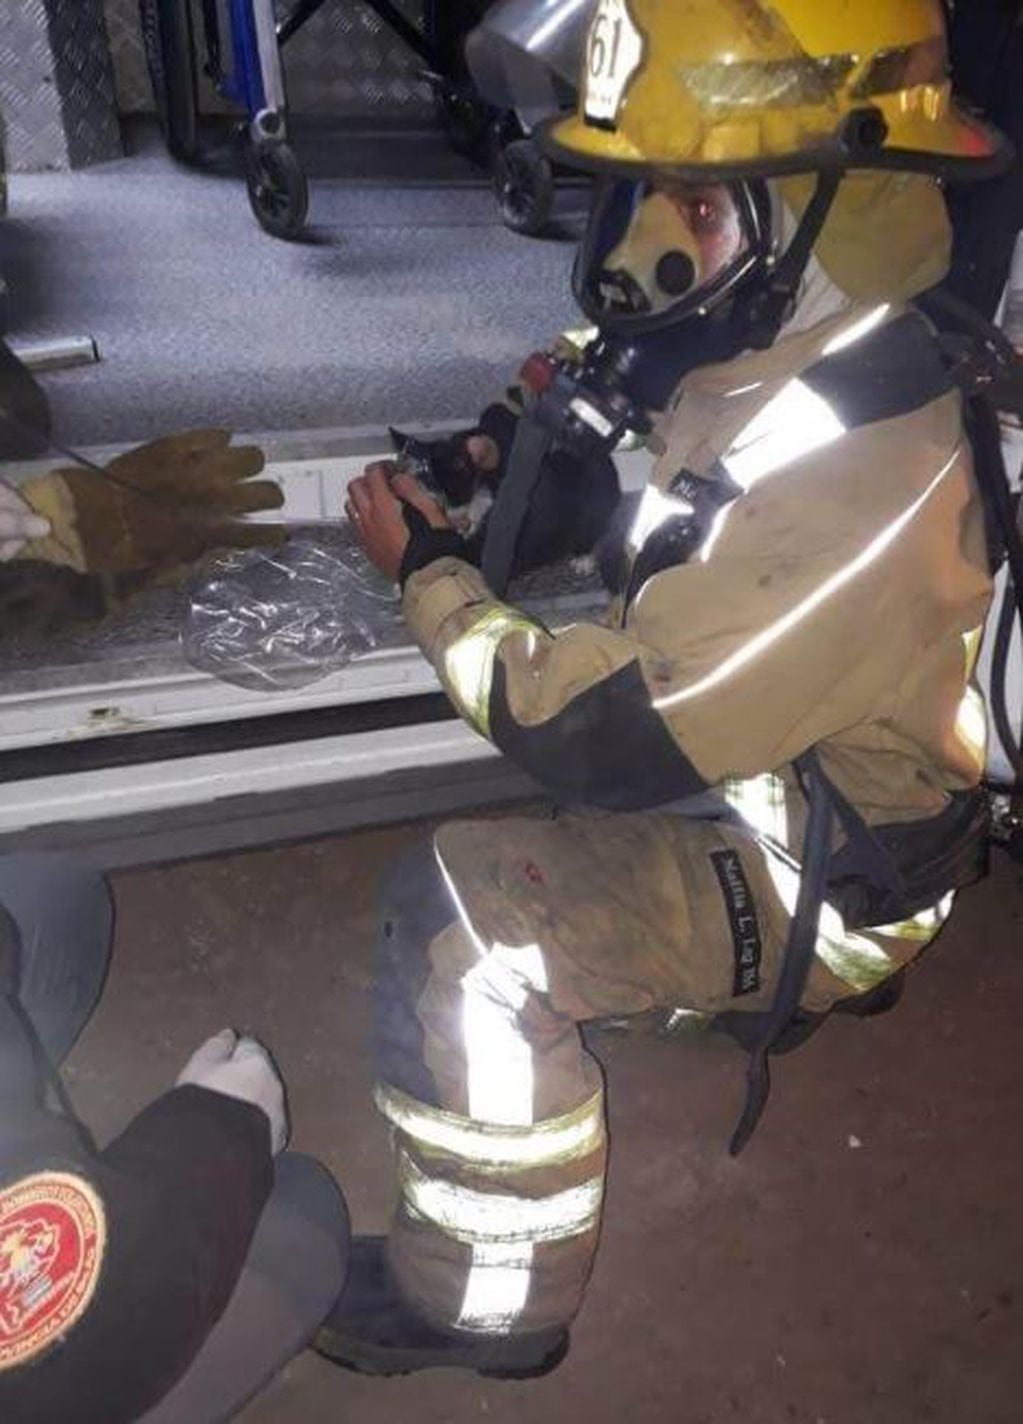 Un bombero rescató a un gato de un incendio, le dio oxígeno y lo reanimó. (TN y La Gente)